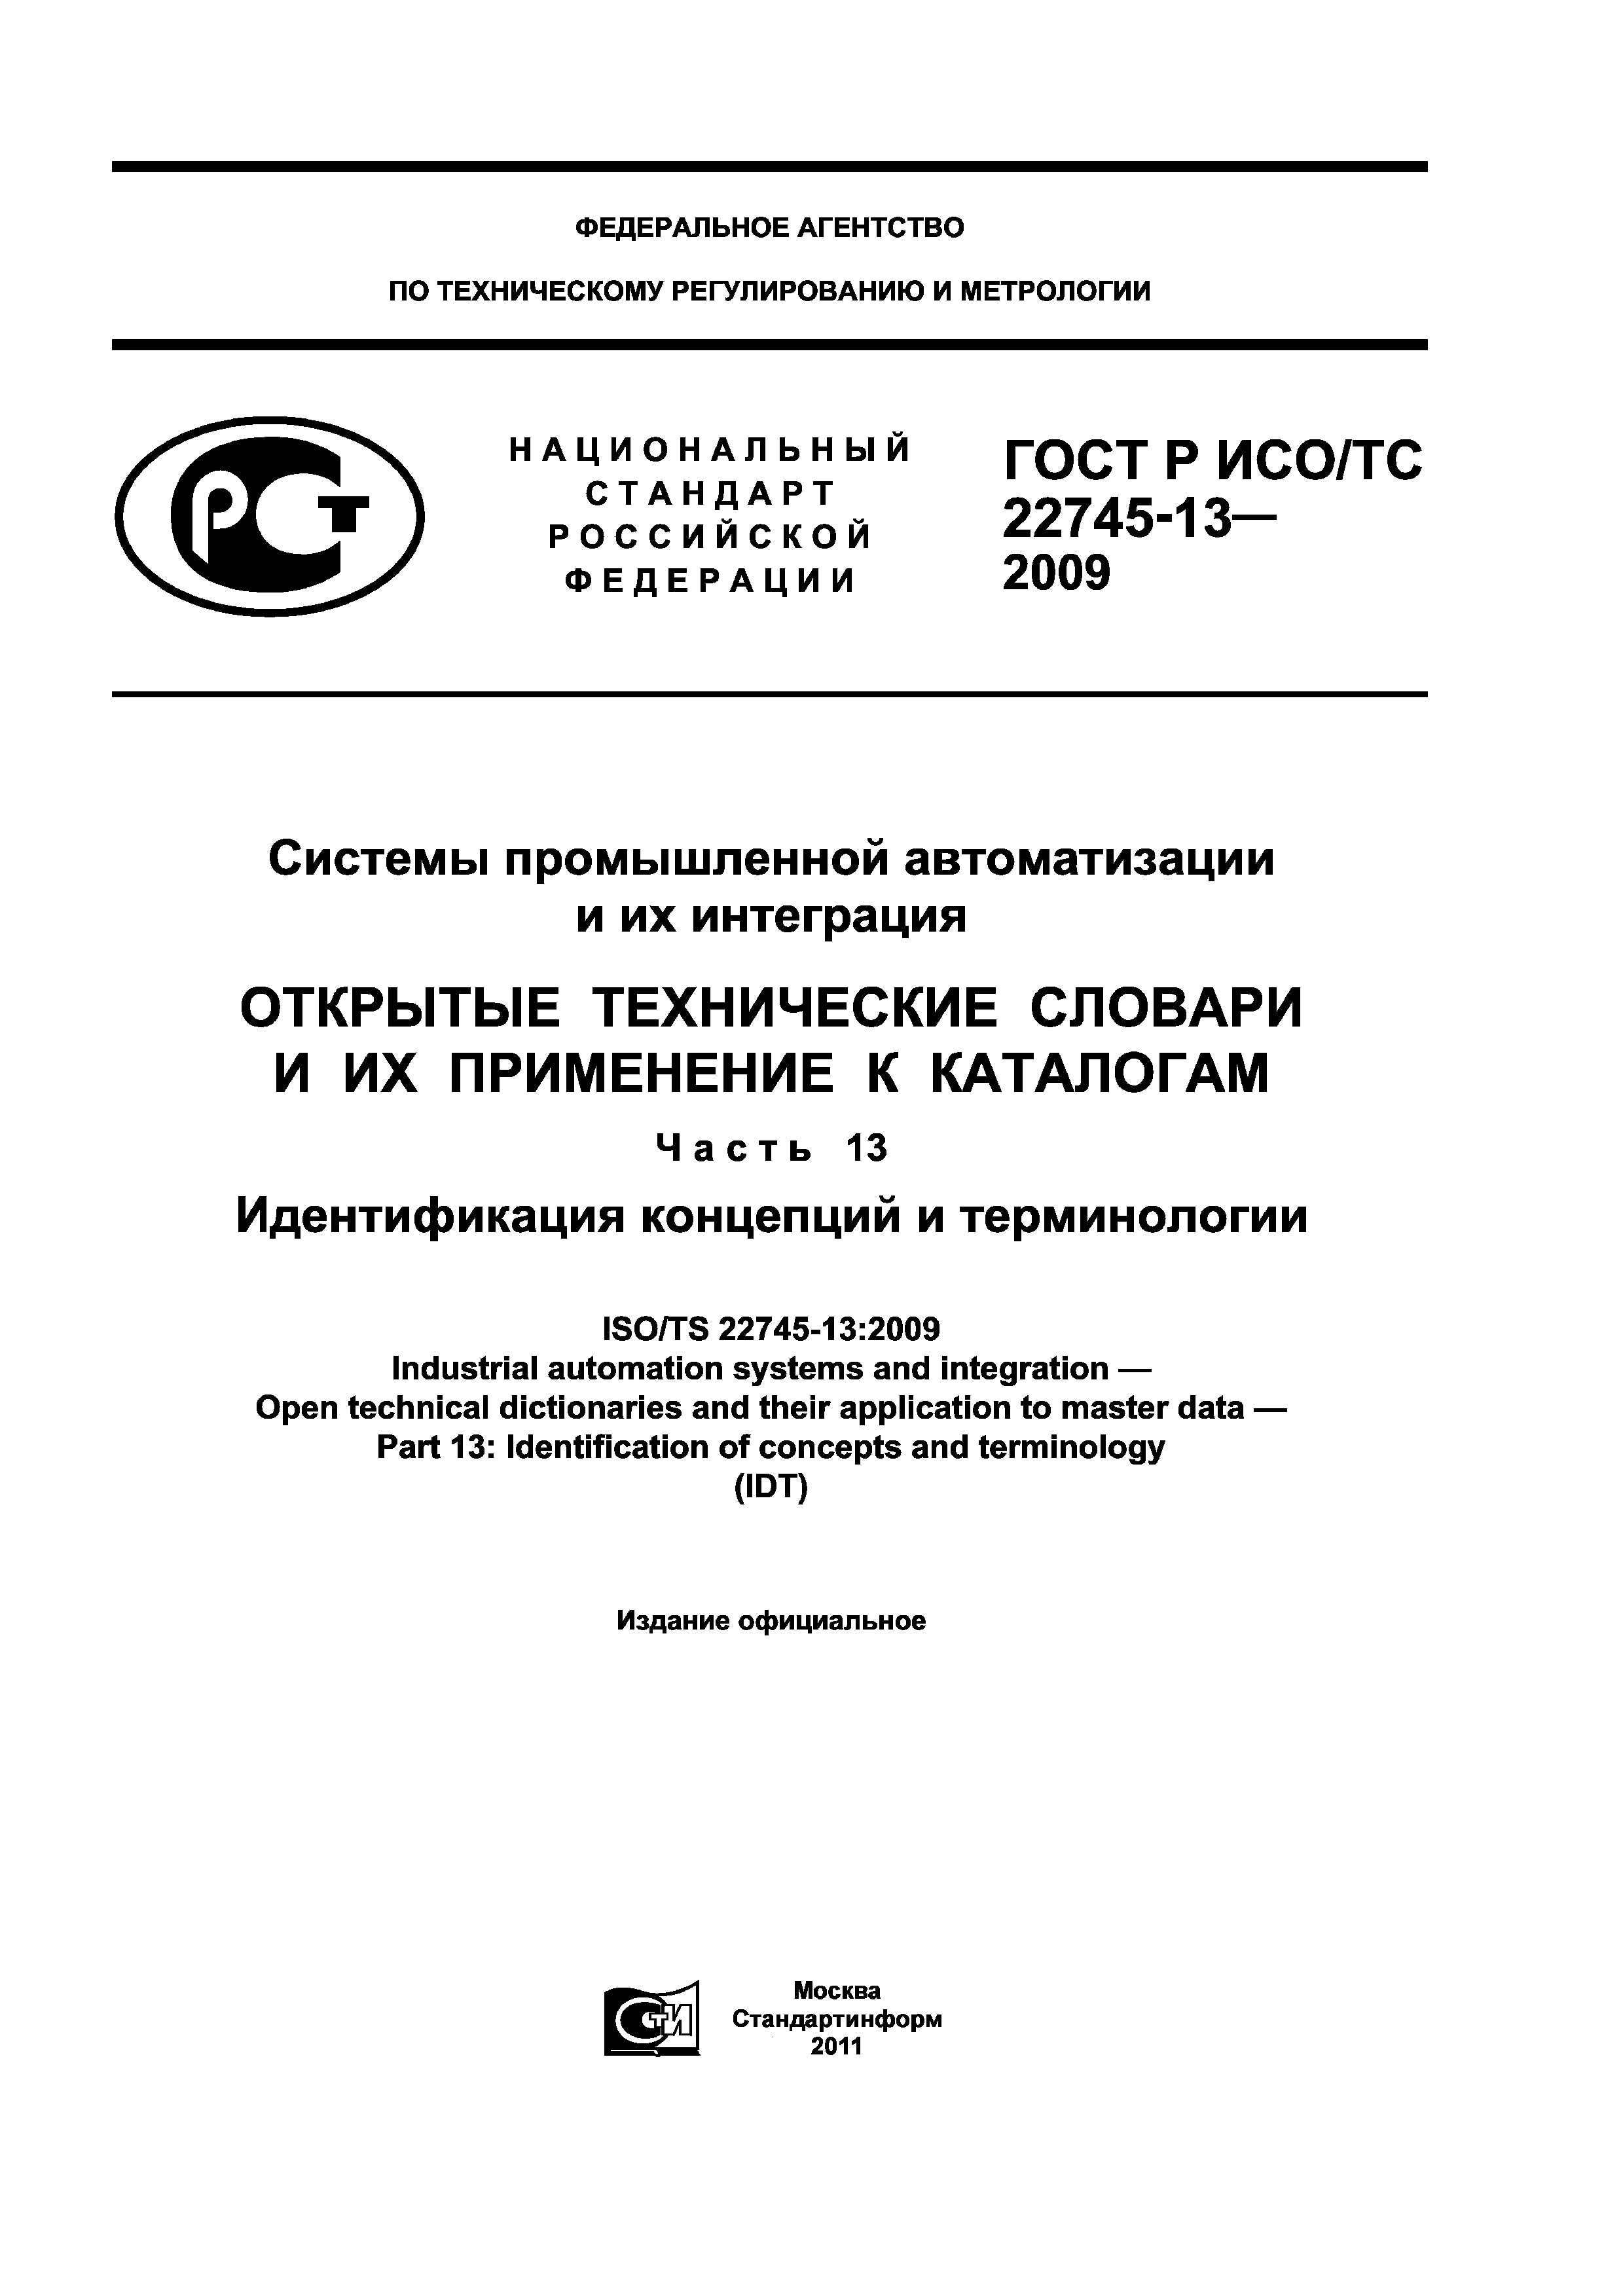 ГОСТ Р ИСО/ТС 22745-13-2009